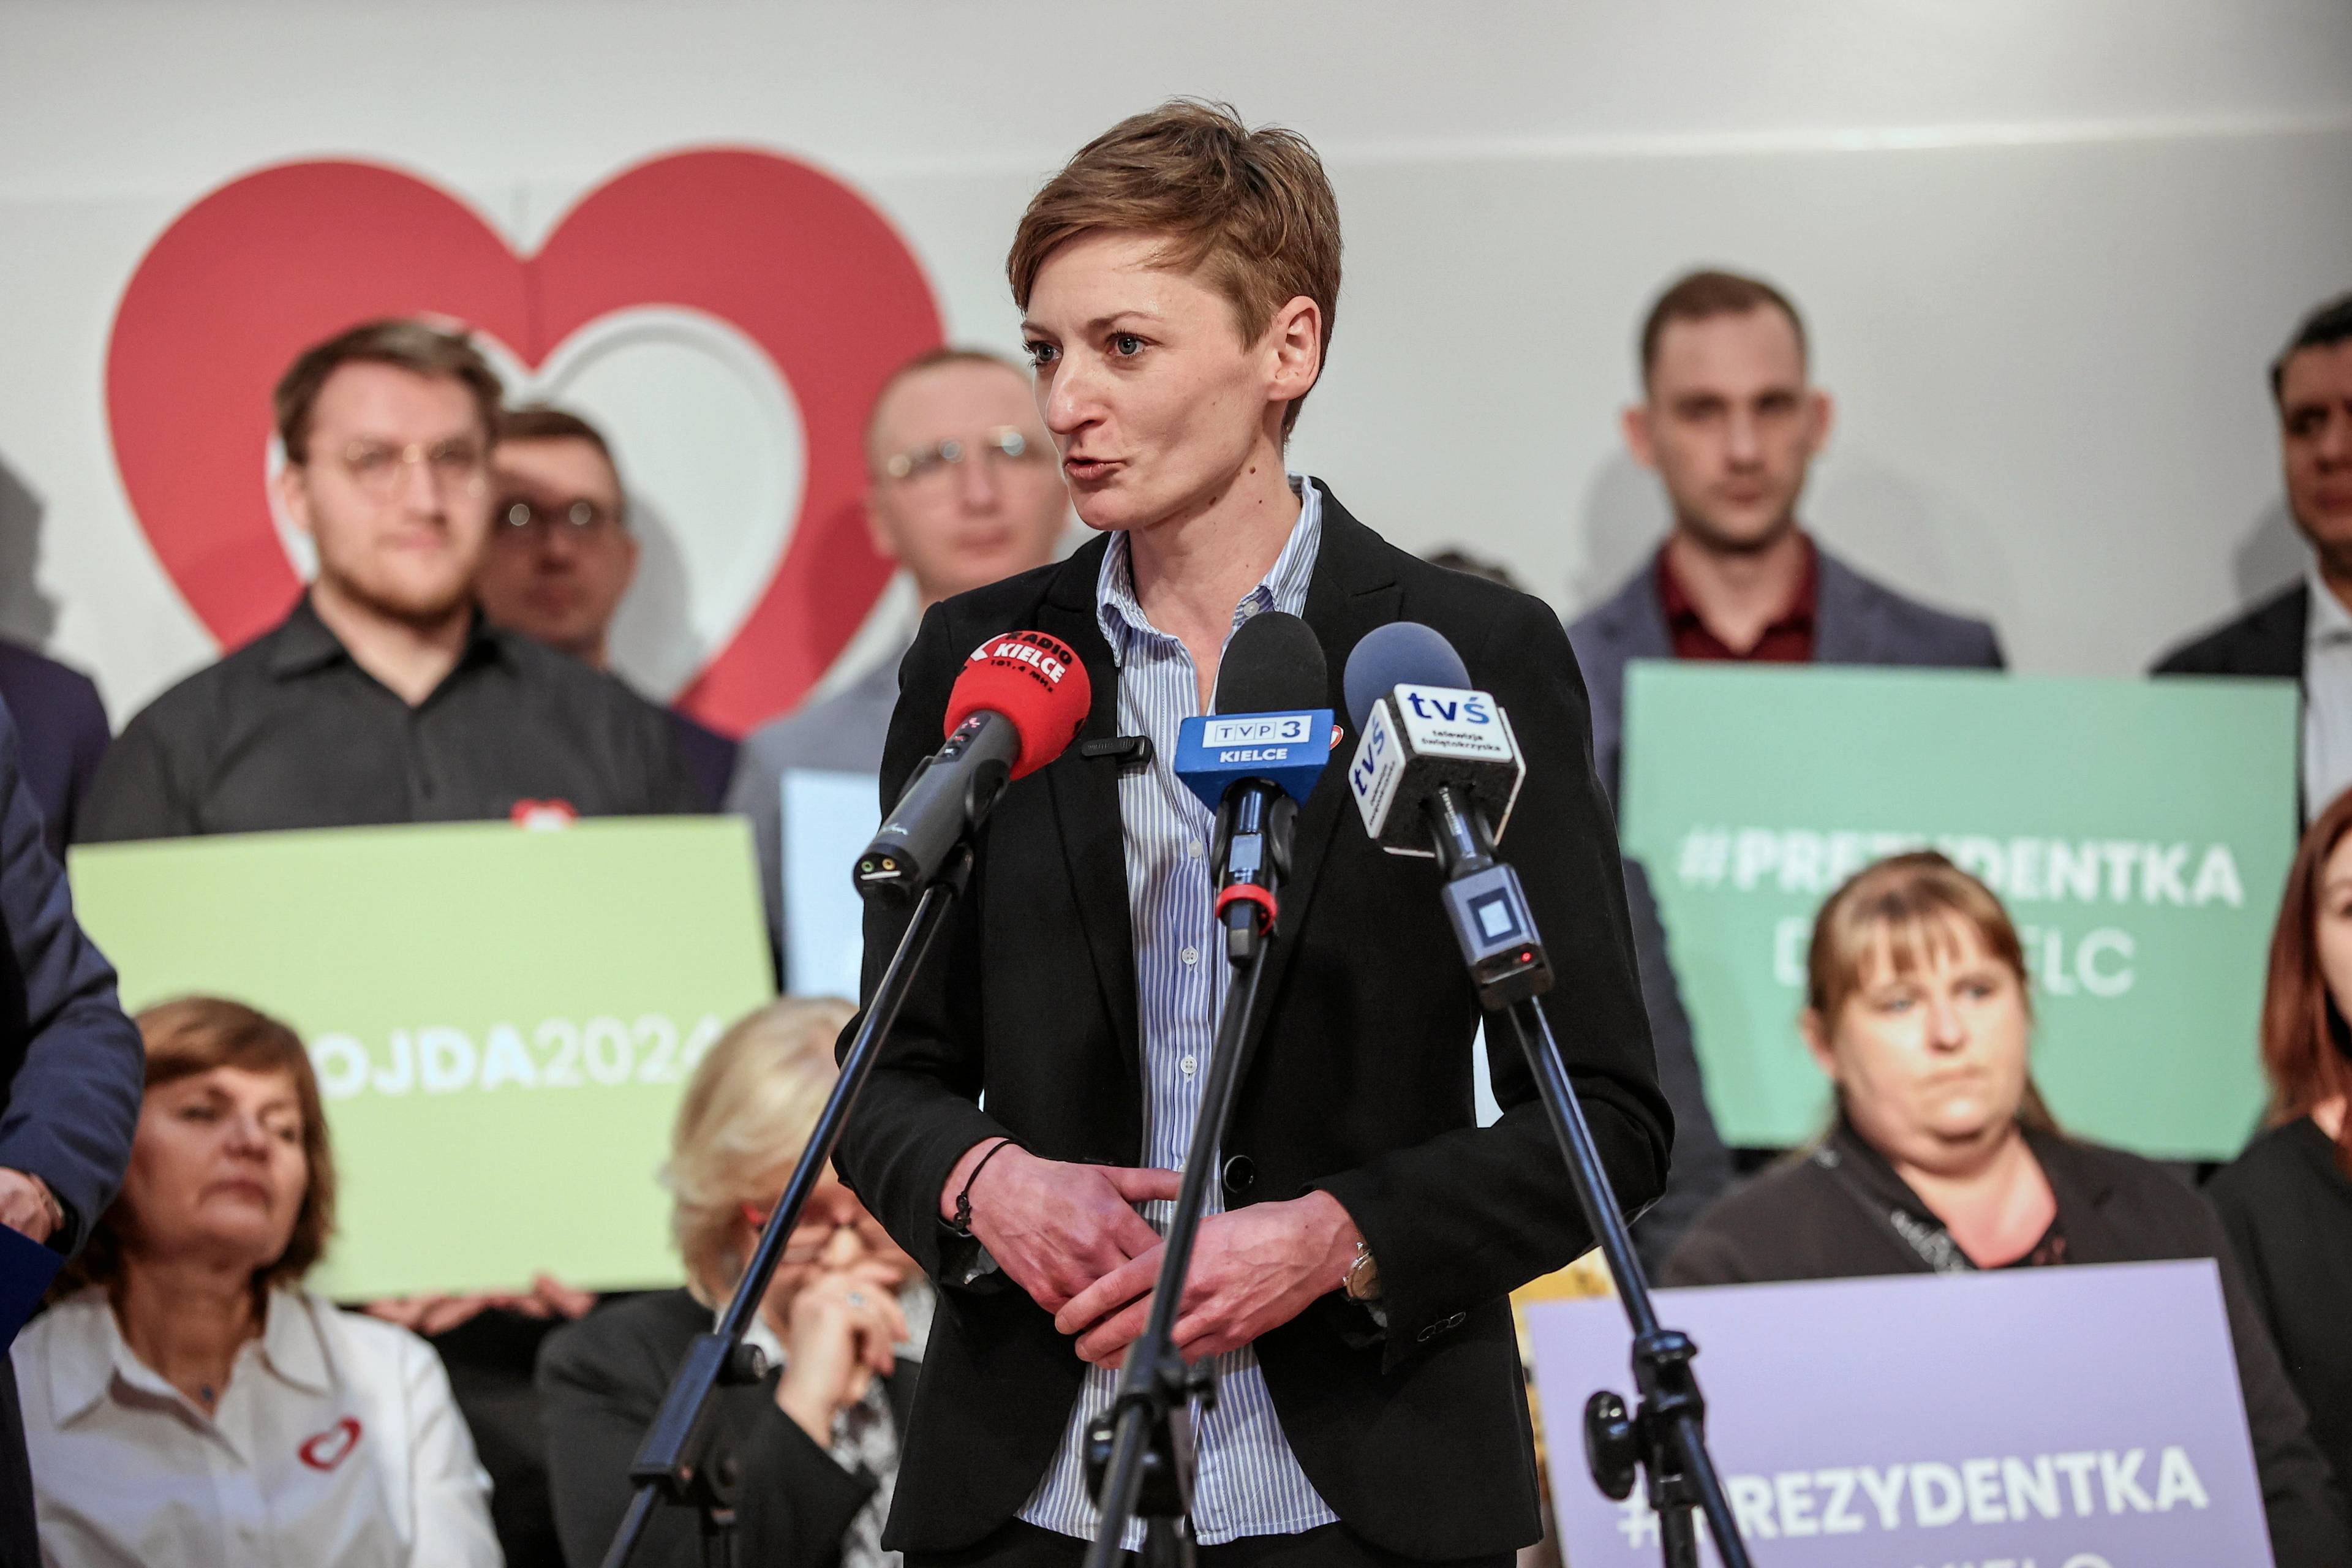 Agata Wojda podczas przemówienia wyborczego w Kielcach